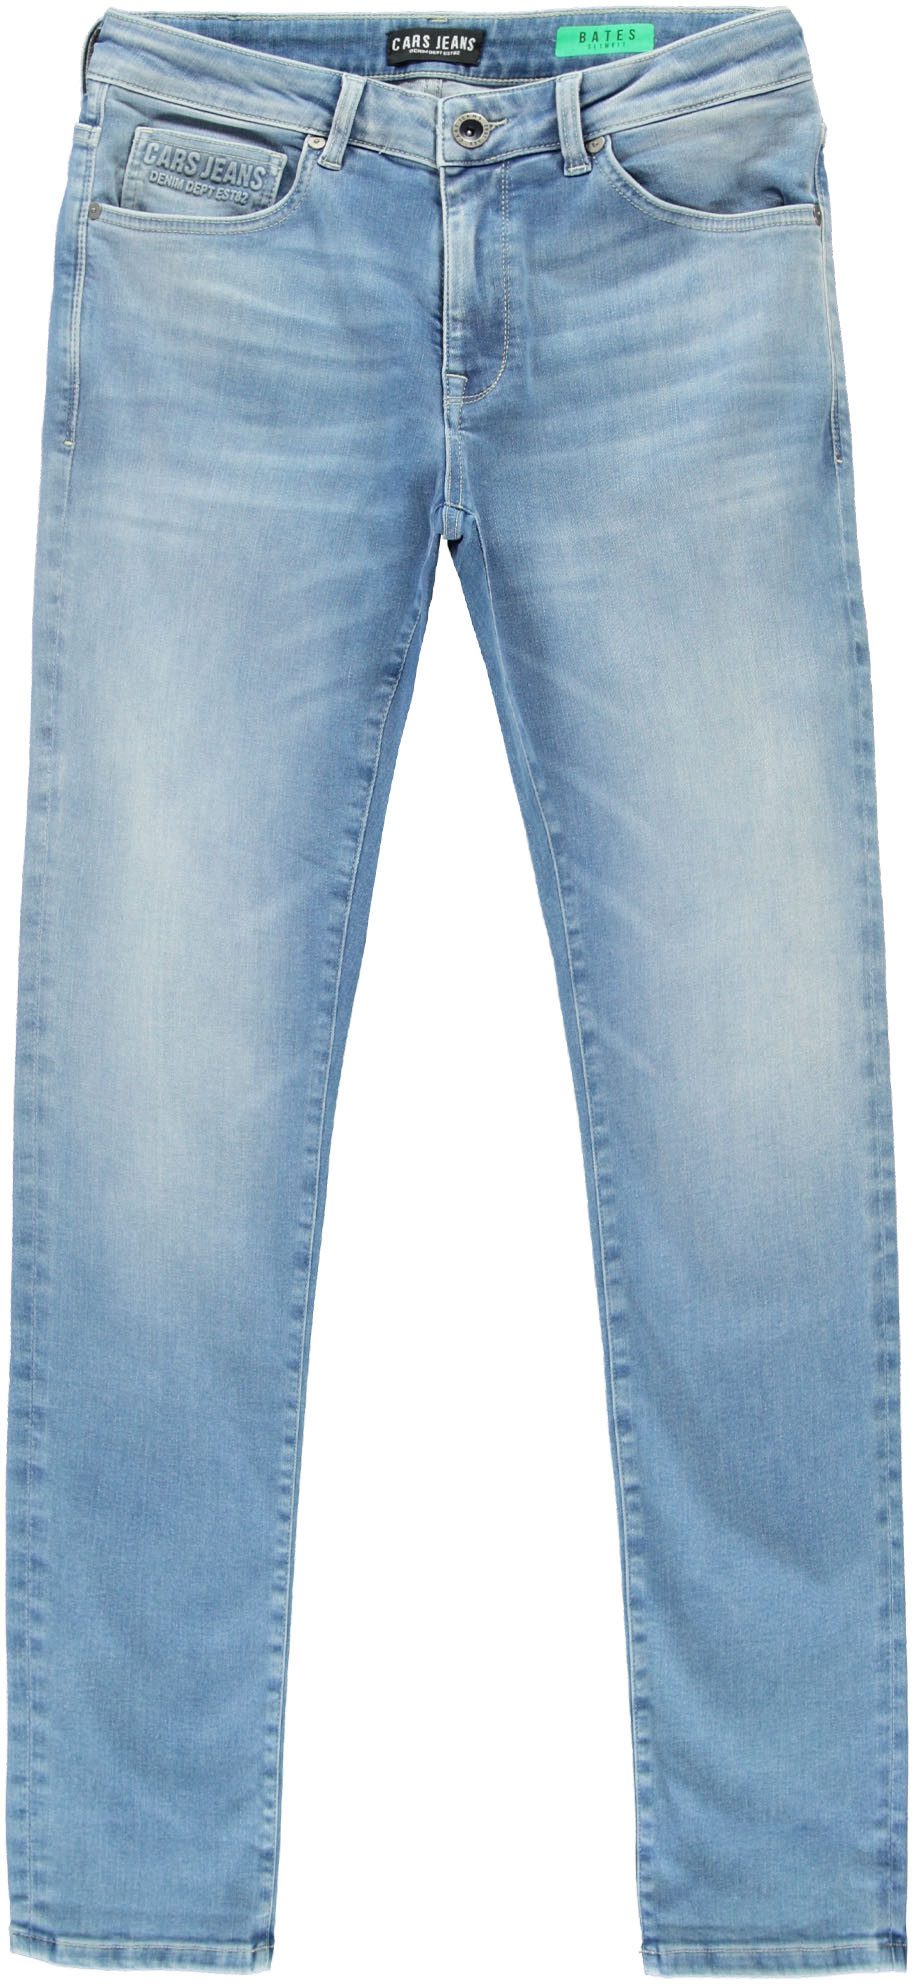 CARS JEANS Slim-fit-Jeans Jeans Bates